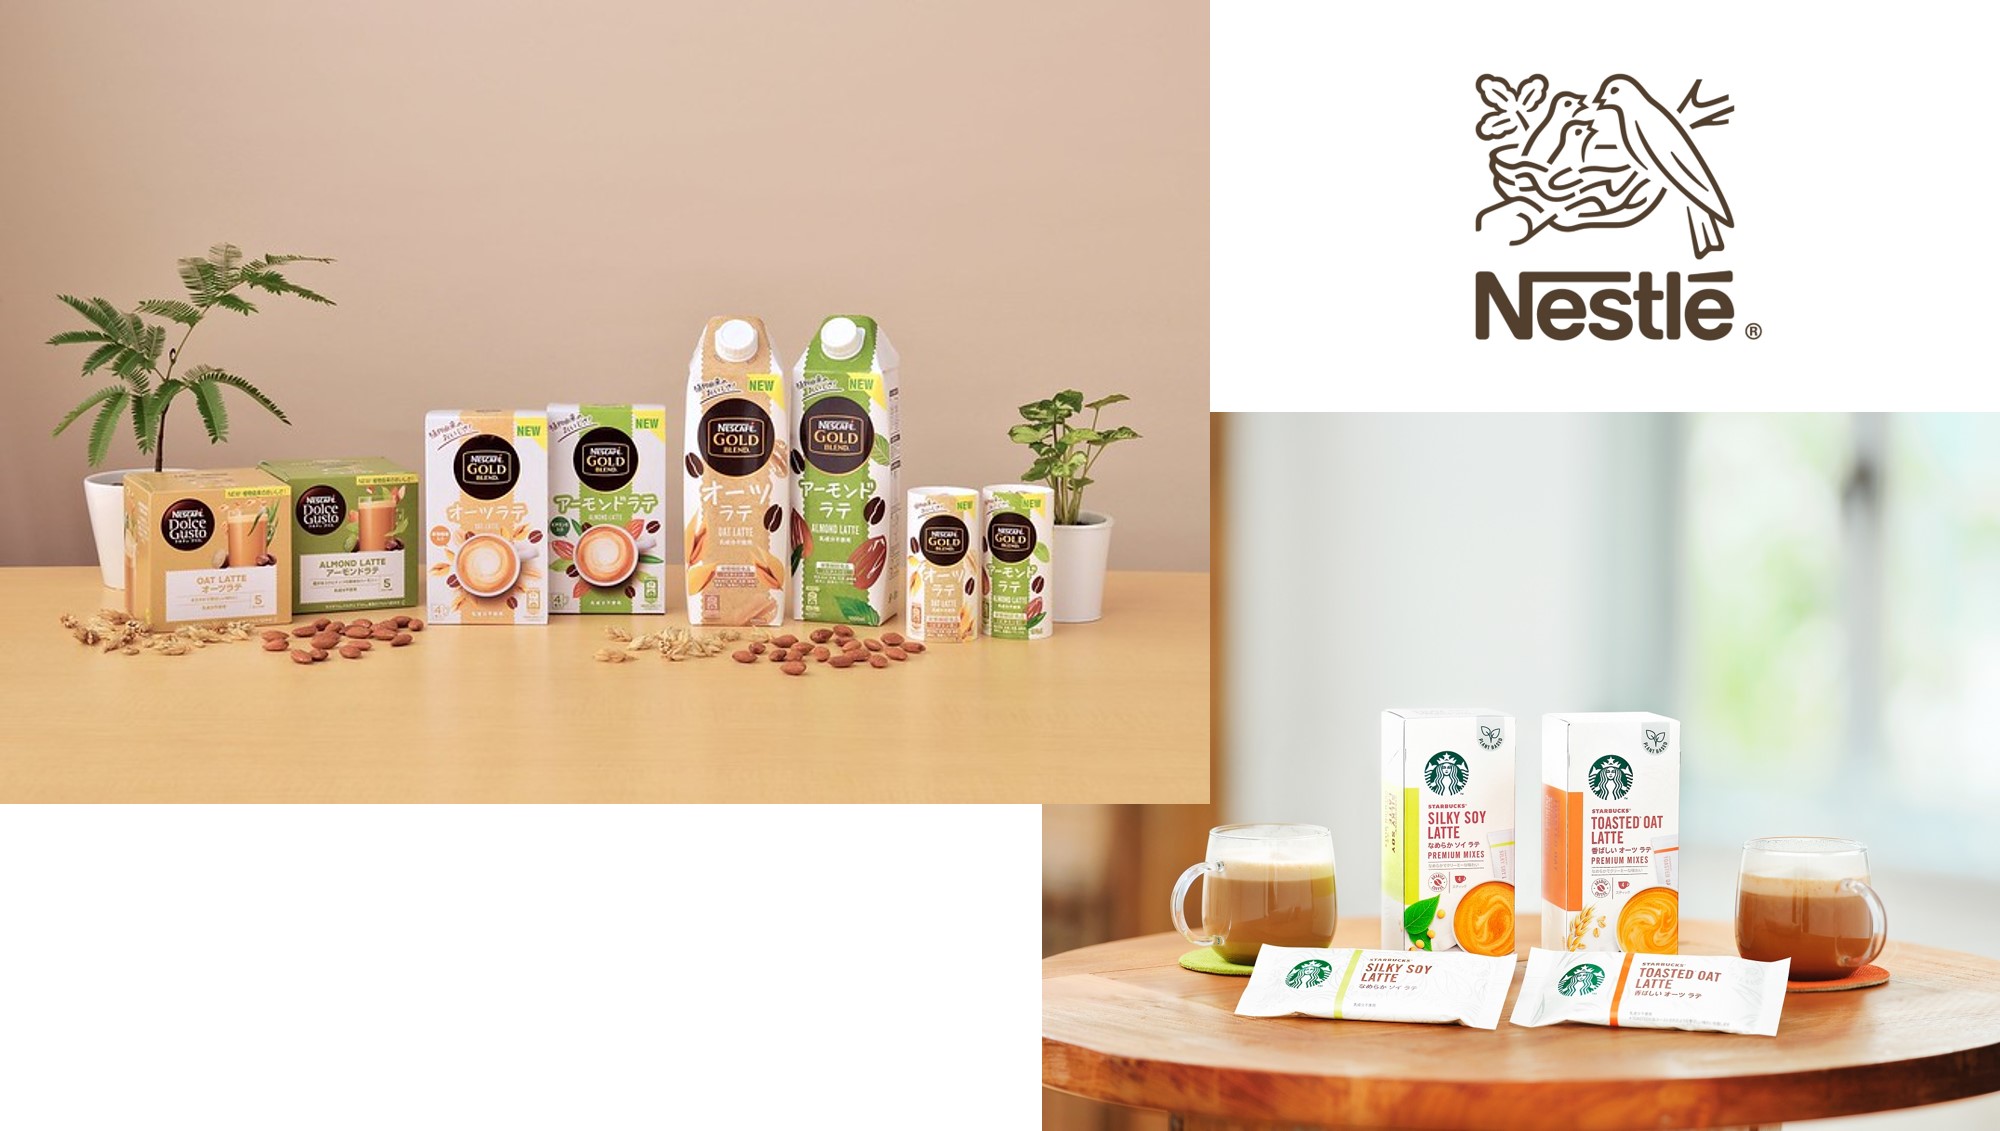 Case study: Nestle và chiến lược marketing thay đổi văn hóa cà phê ở Nhật Bản marketingreview.vn 3